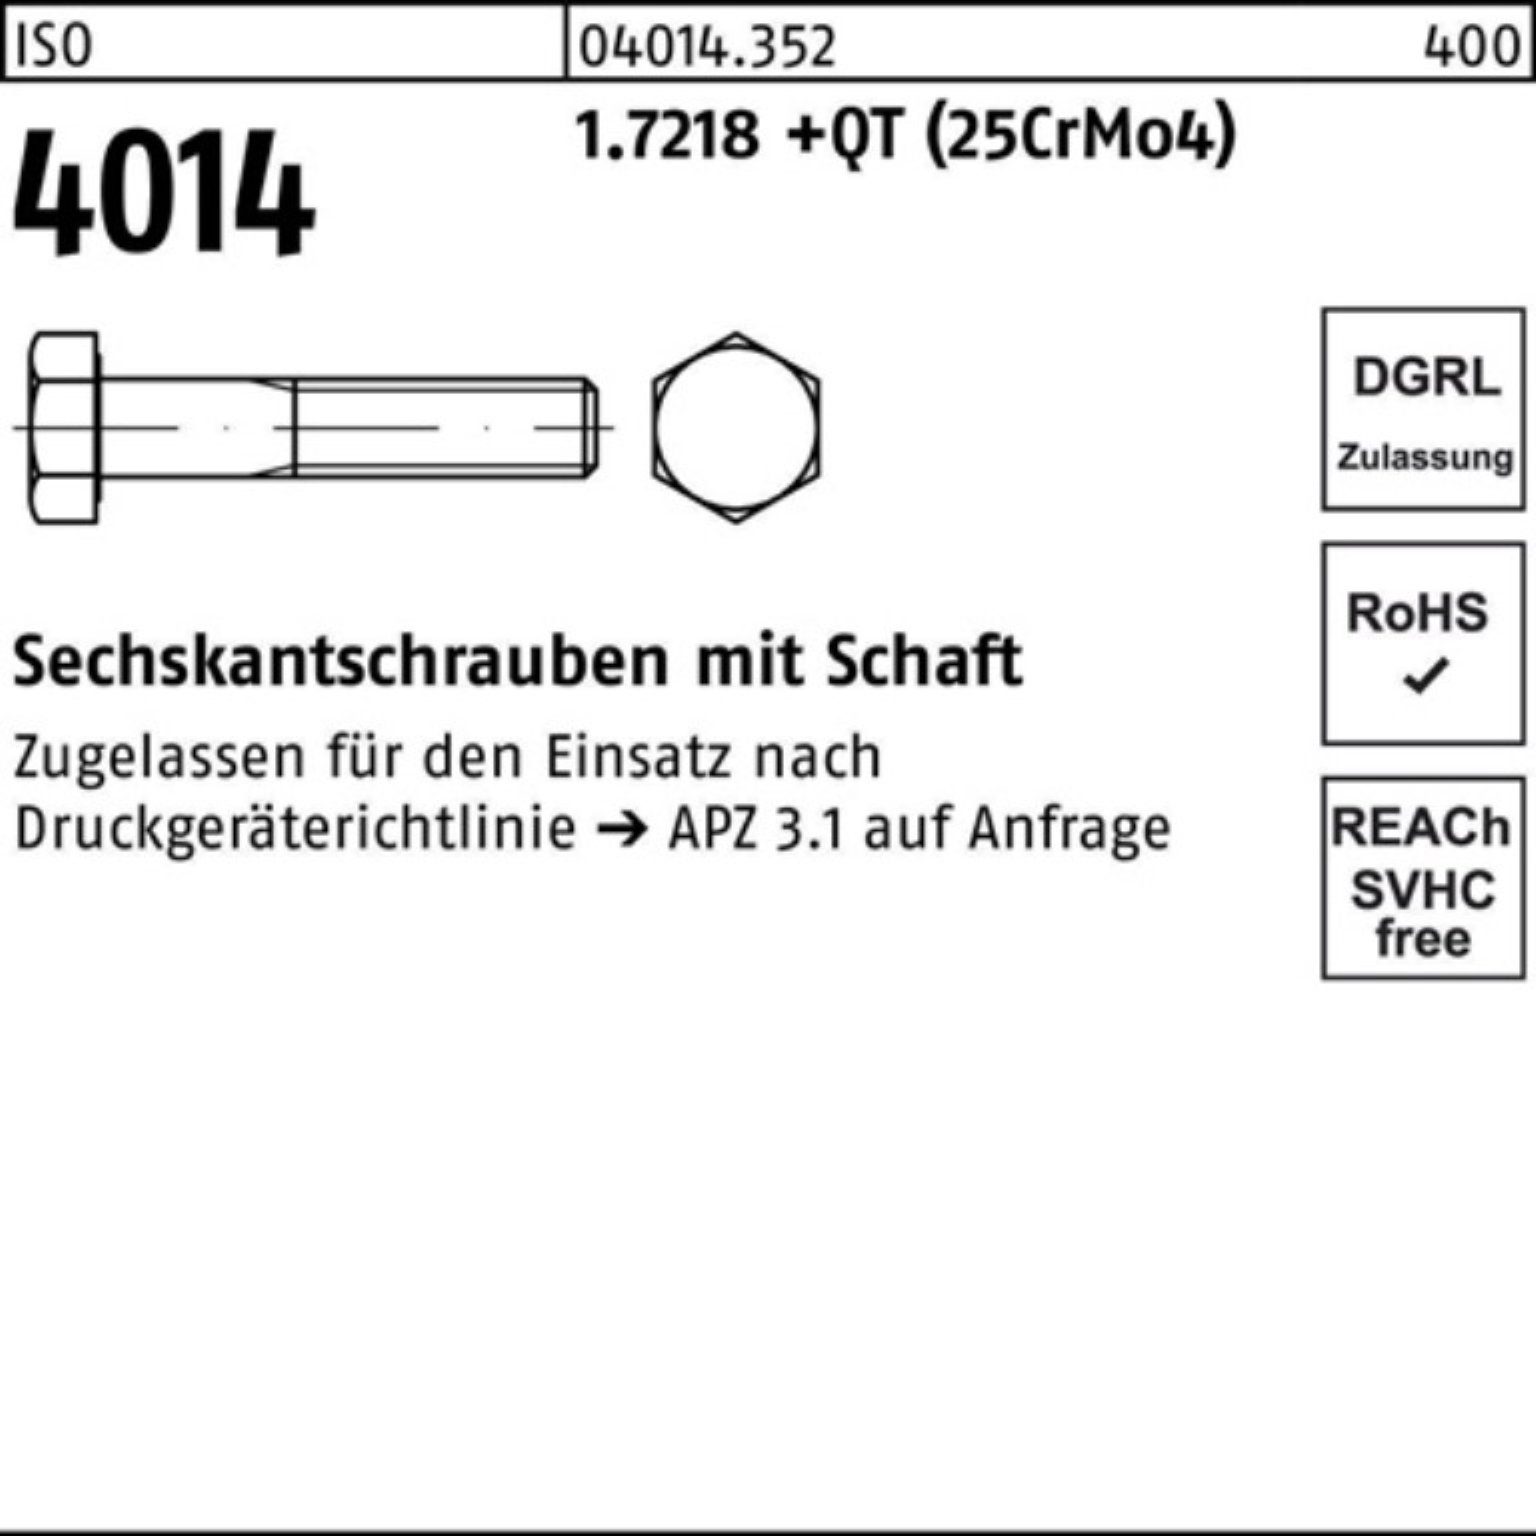 ISO Sechskantschraube Reyher Pack Sechskantschraube +QT Schaft 1.7218 50 M12x 4014 100er (25CrM